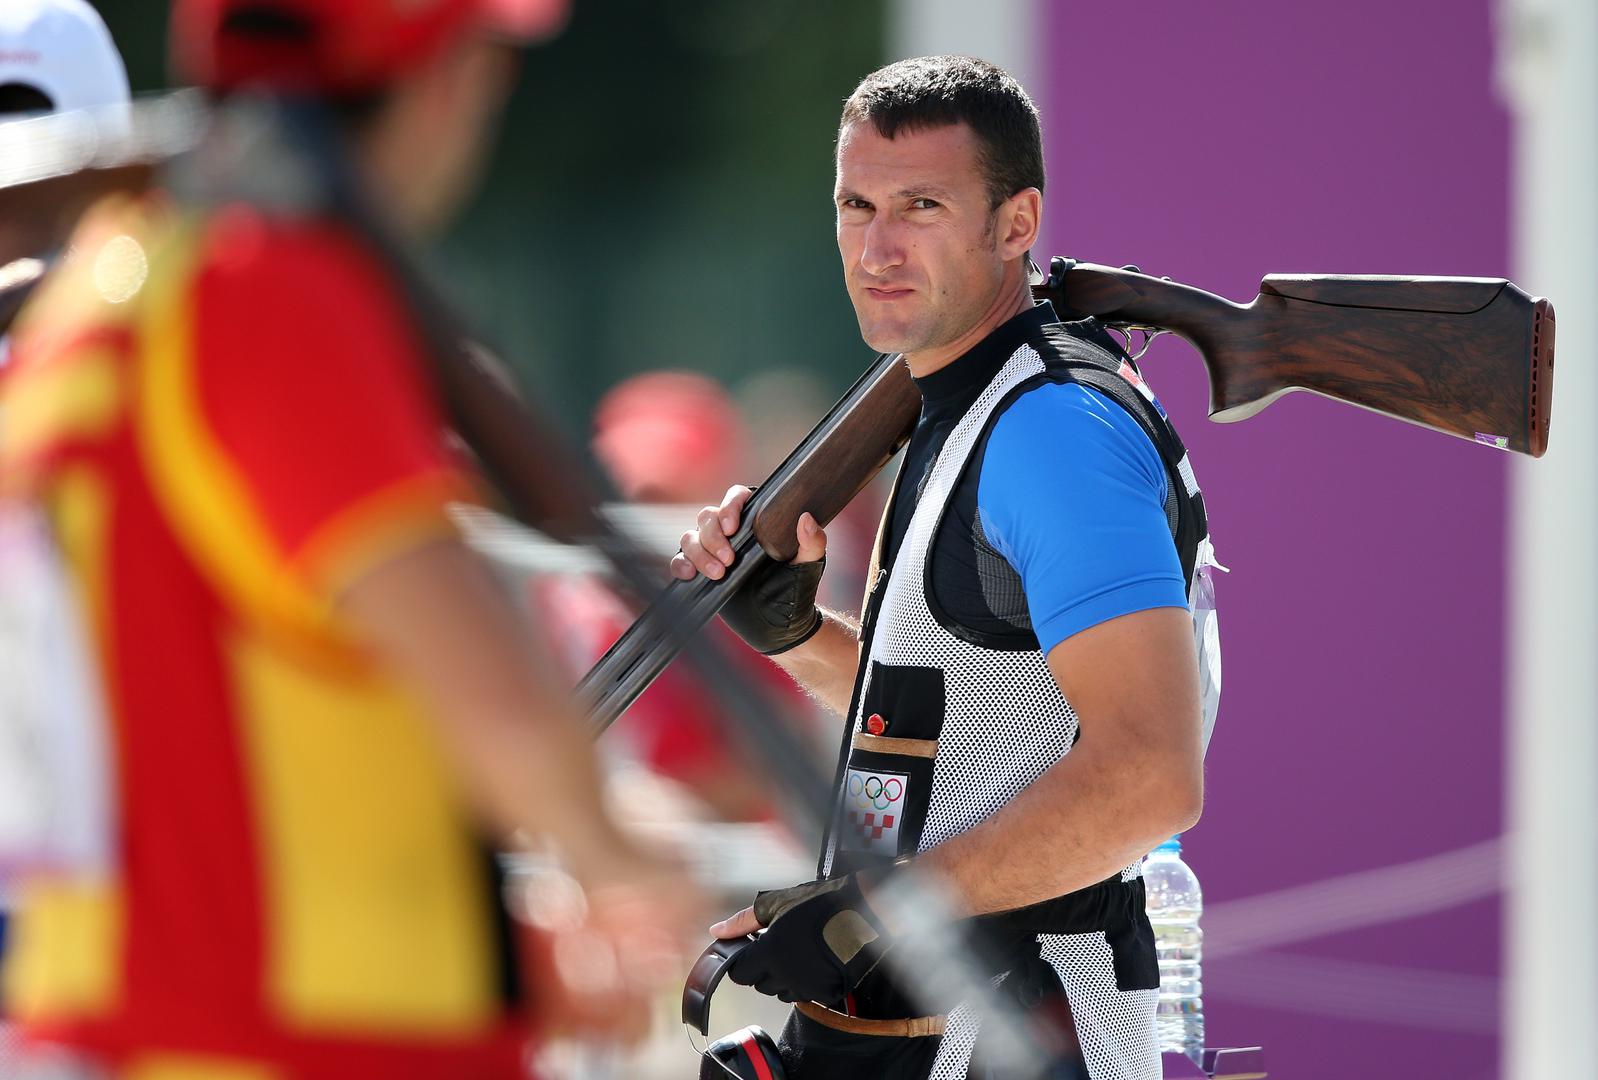 10. Giovanni Cernogoraz olimpijski je pobjednik u trapu, donio je zlato Hrvatskoj  na Olimpijskim igrama u Londonu 2012. Ukupnim rezultatom od 146 pogođenih meta izjednačio je dotadašnji olimpijski rekord.